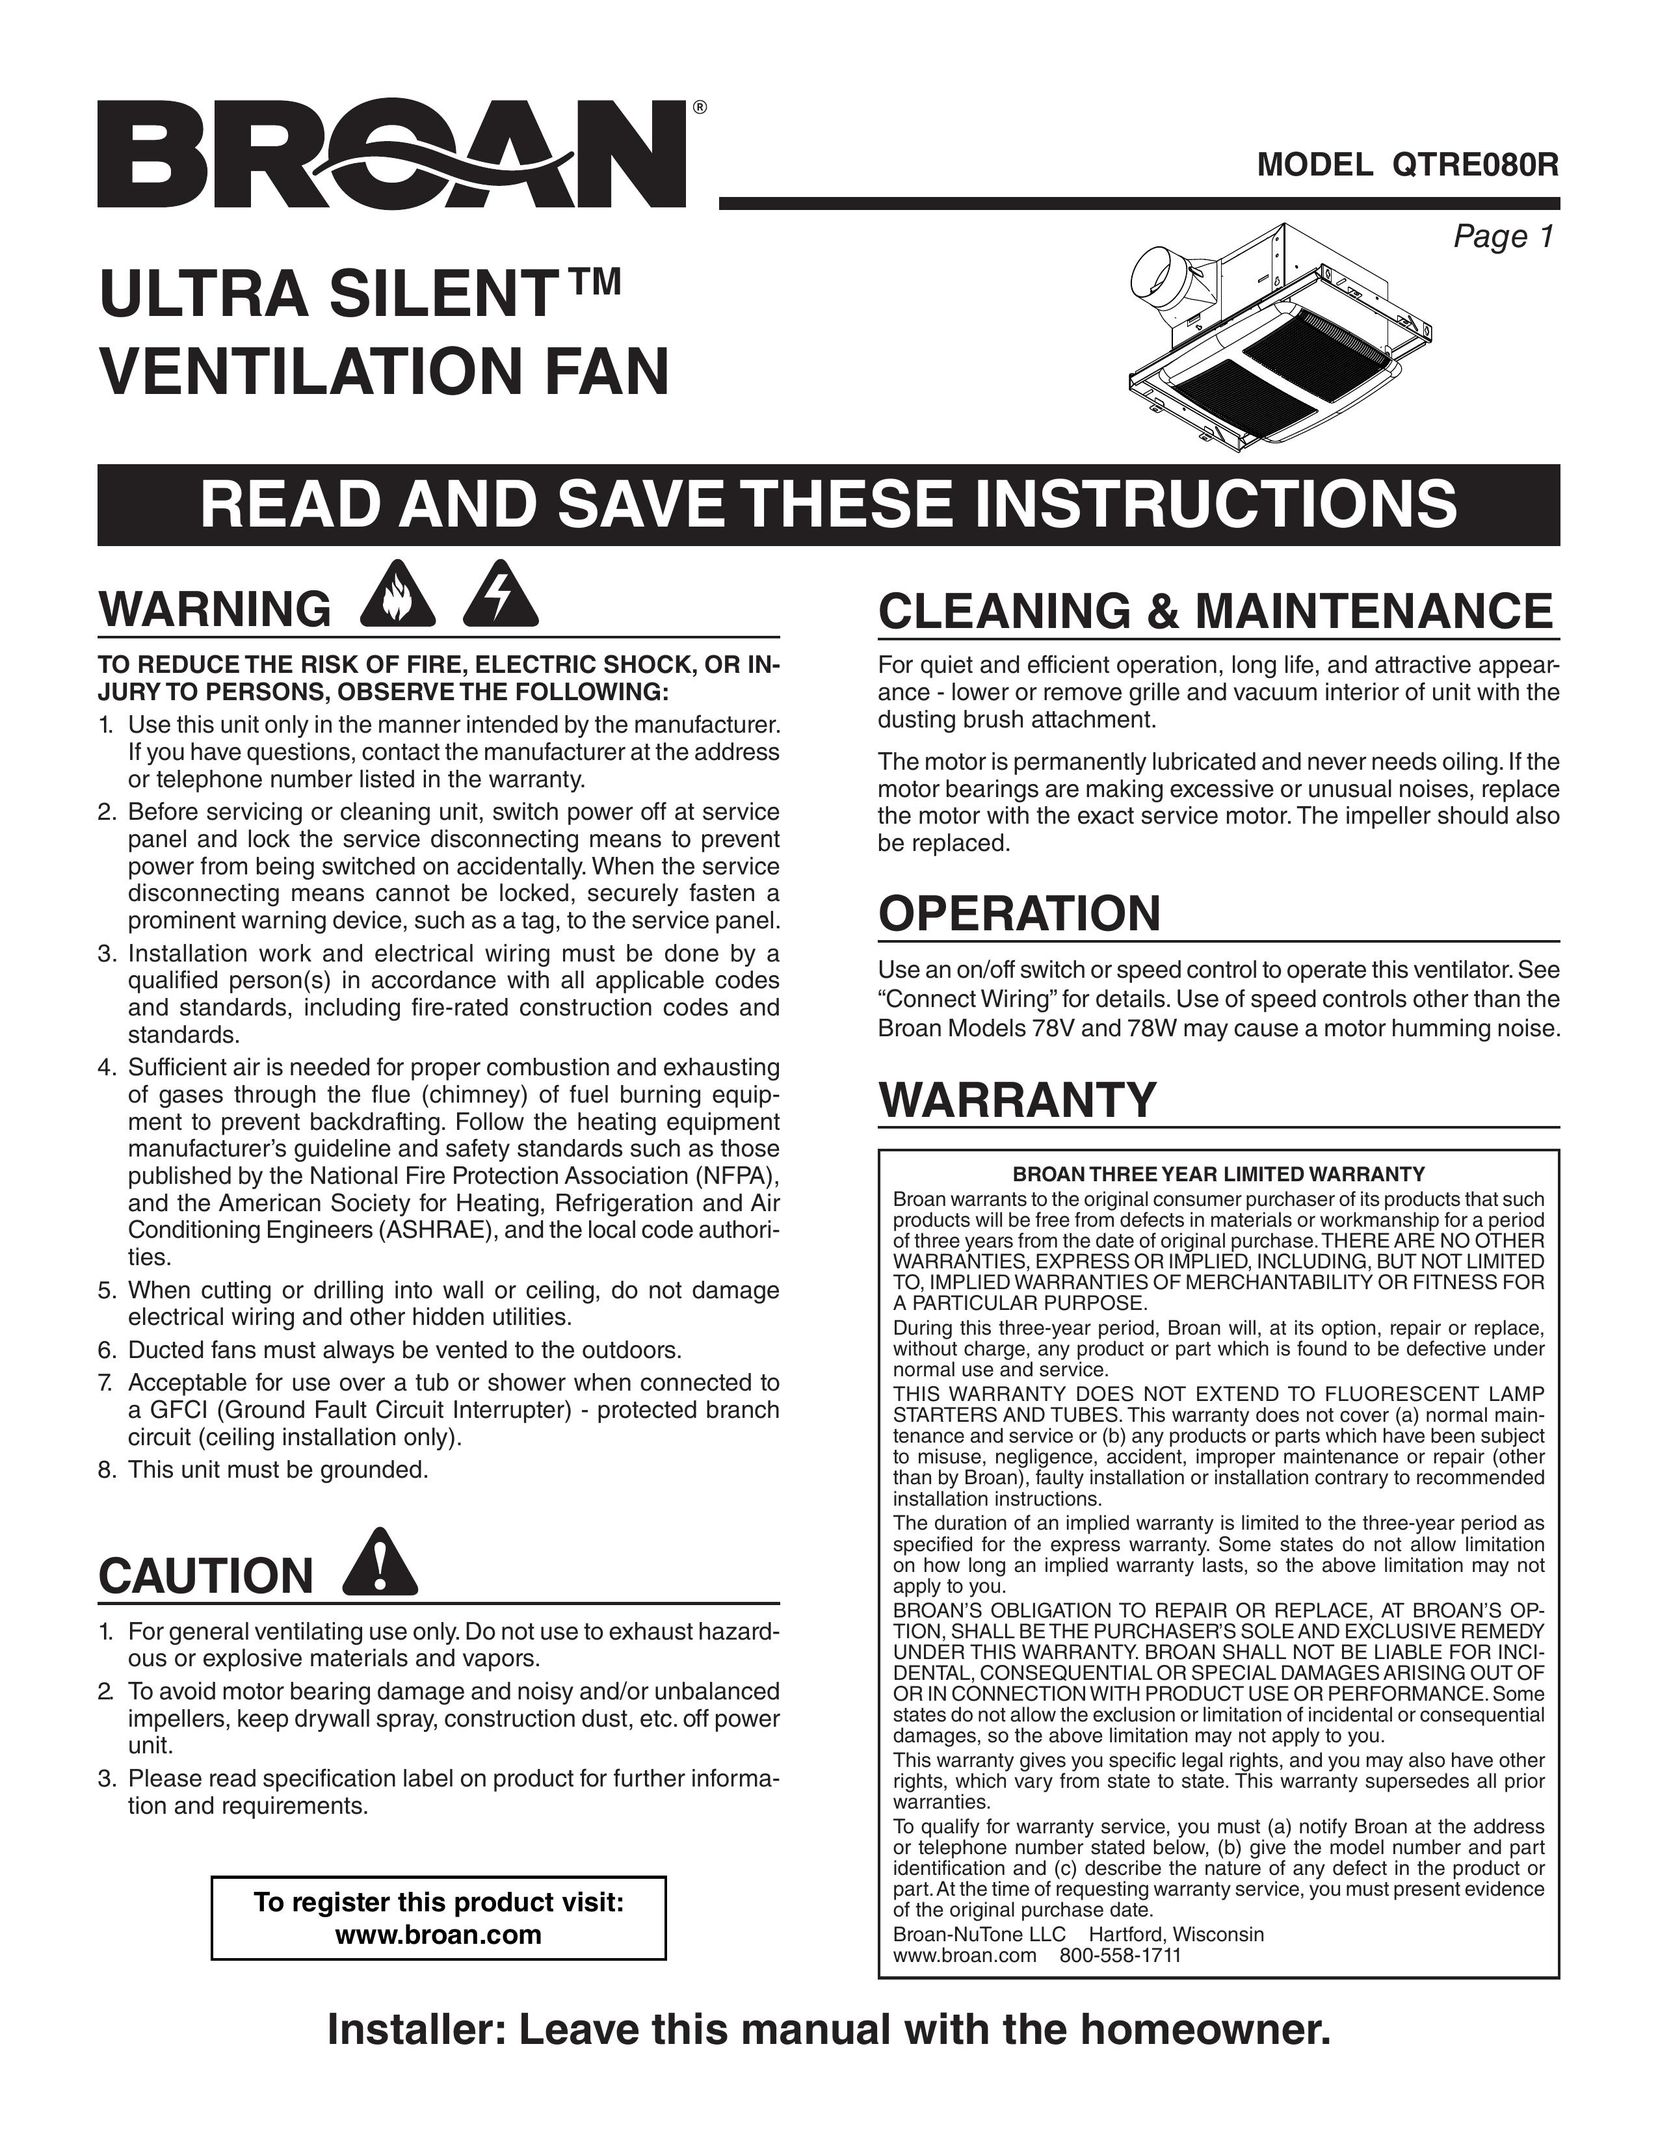 Broan QTRE080R Fan User Manual